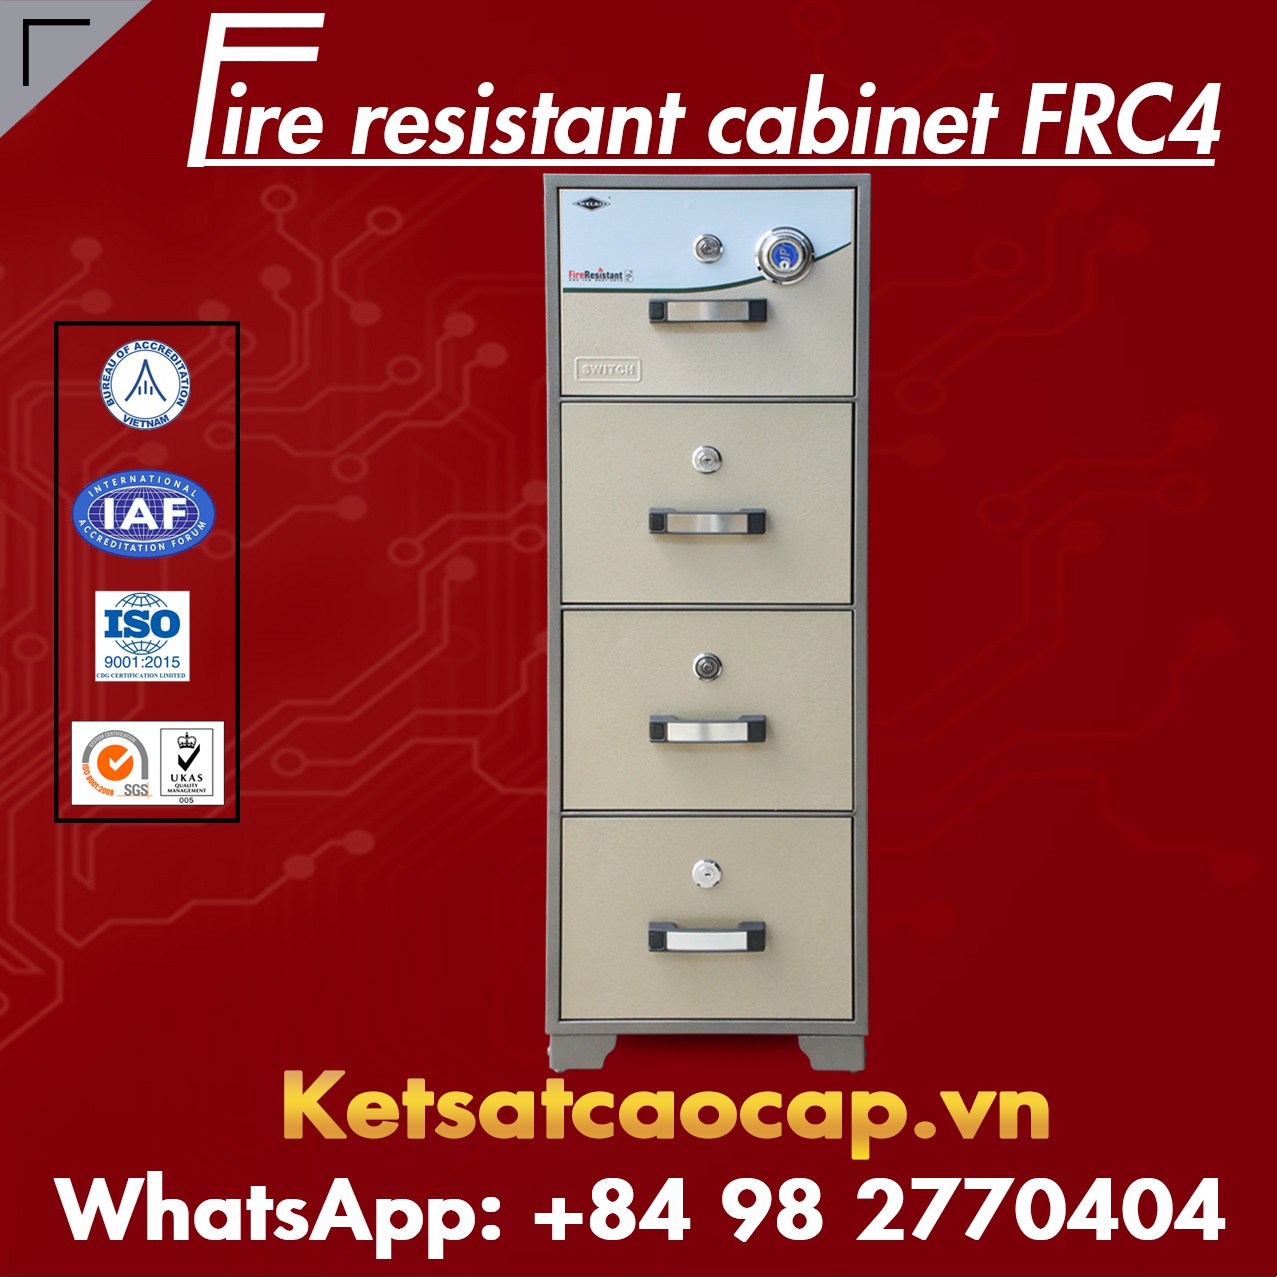 Nguồn Hàng Tủ Sắt Chống Cháy WELKO FRC4 DK